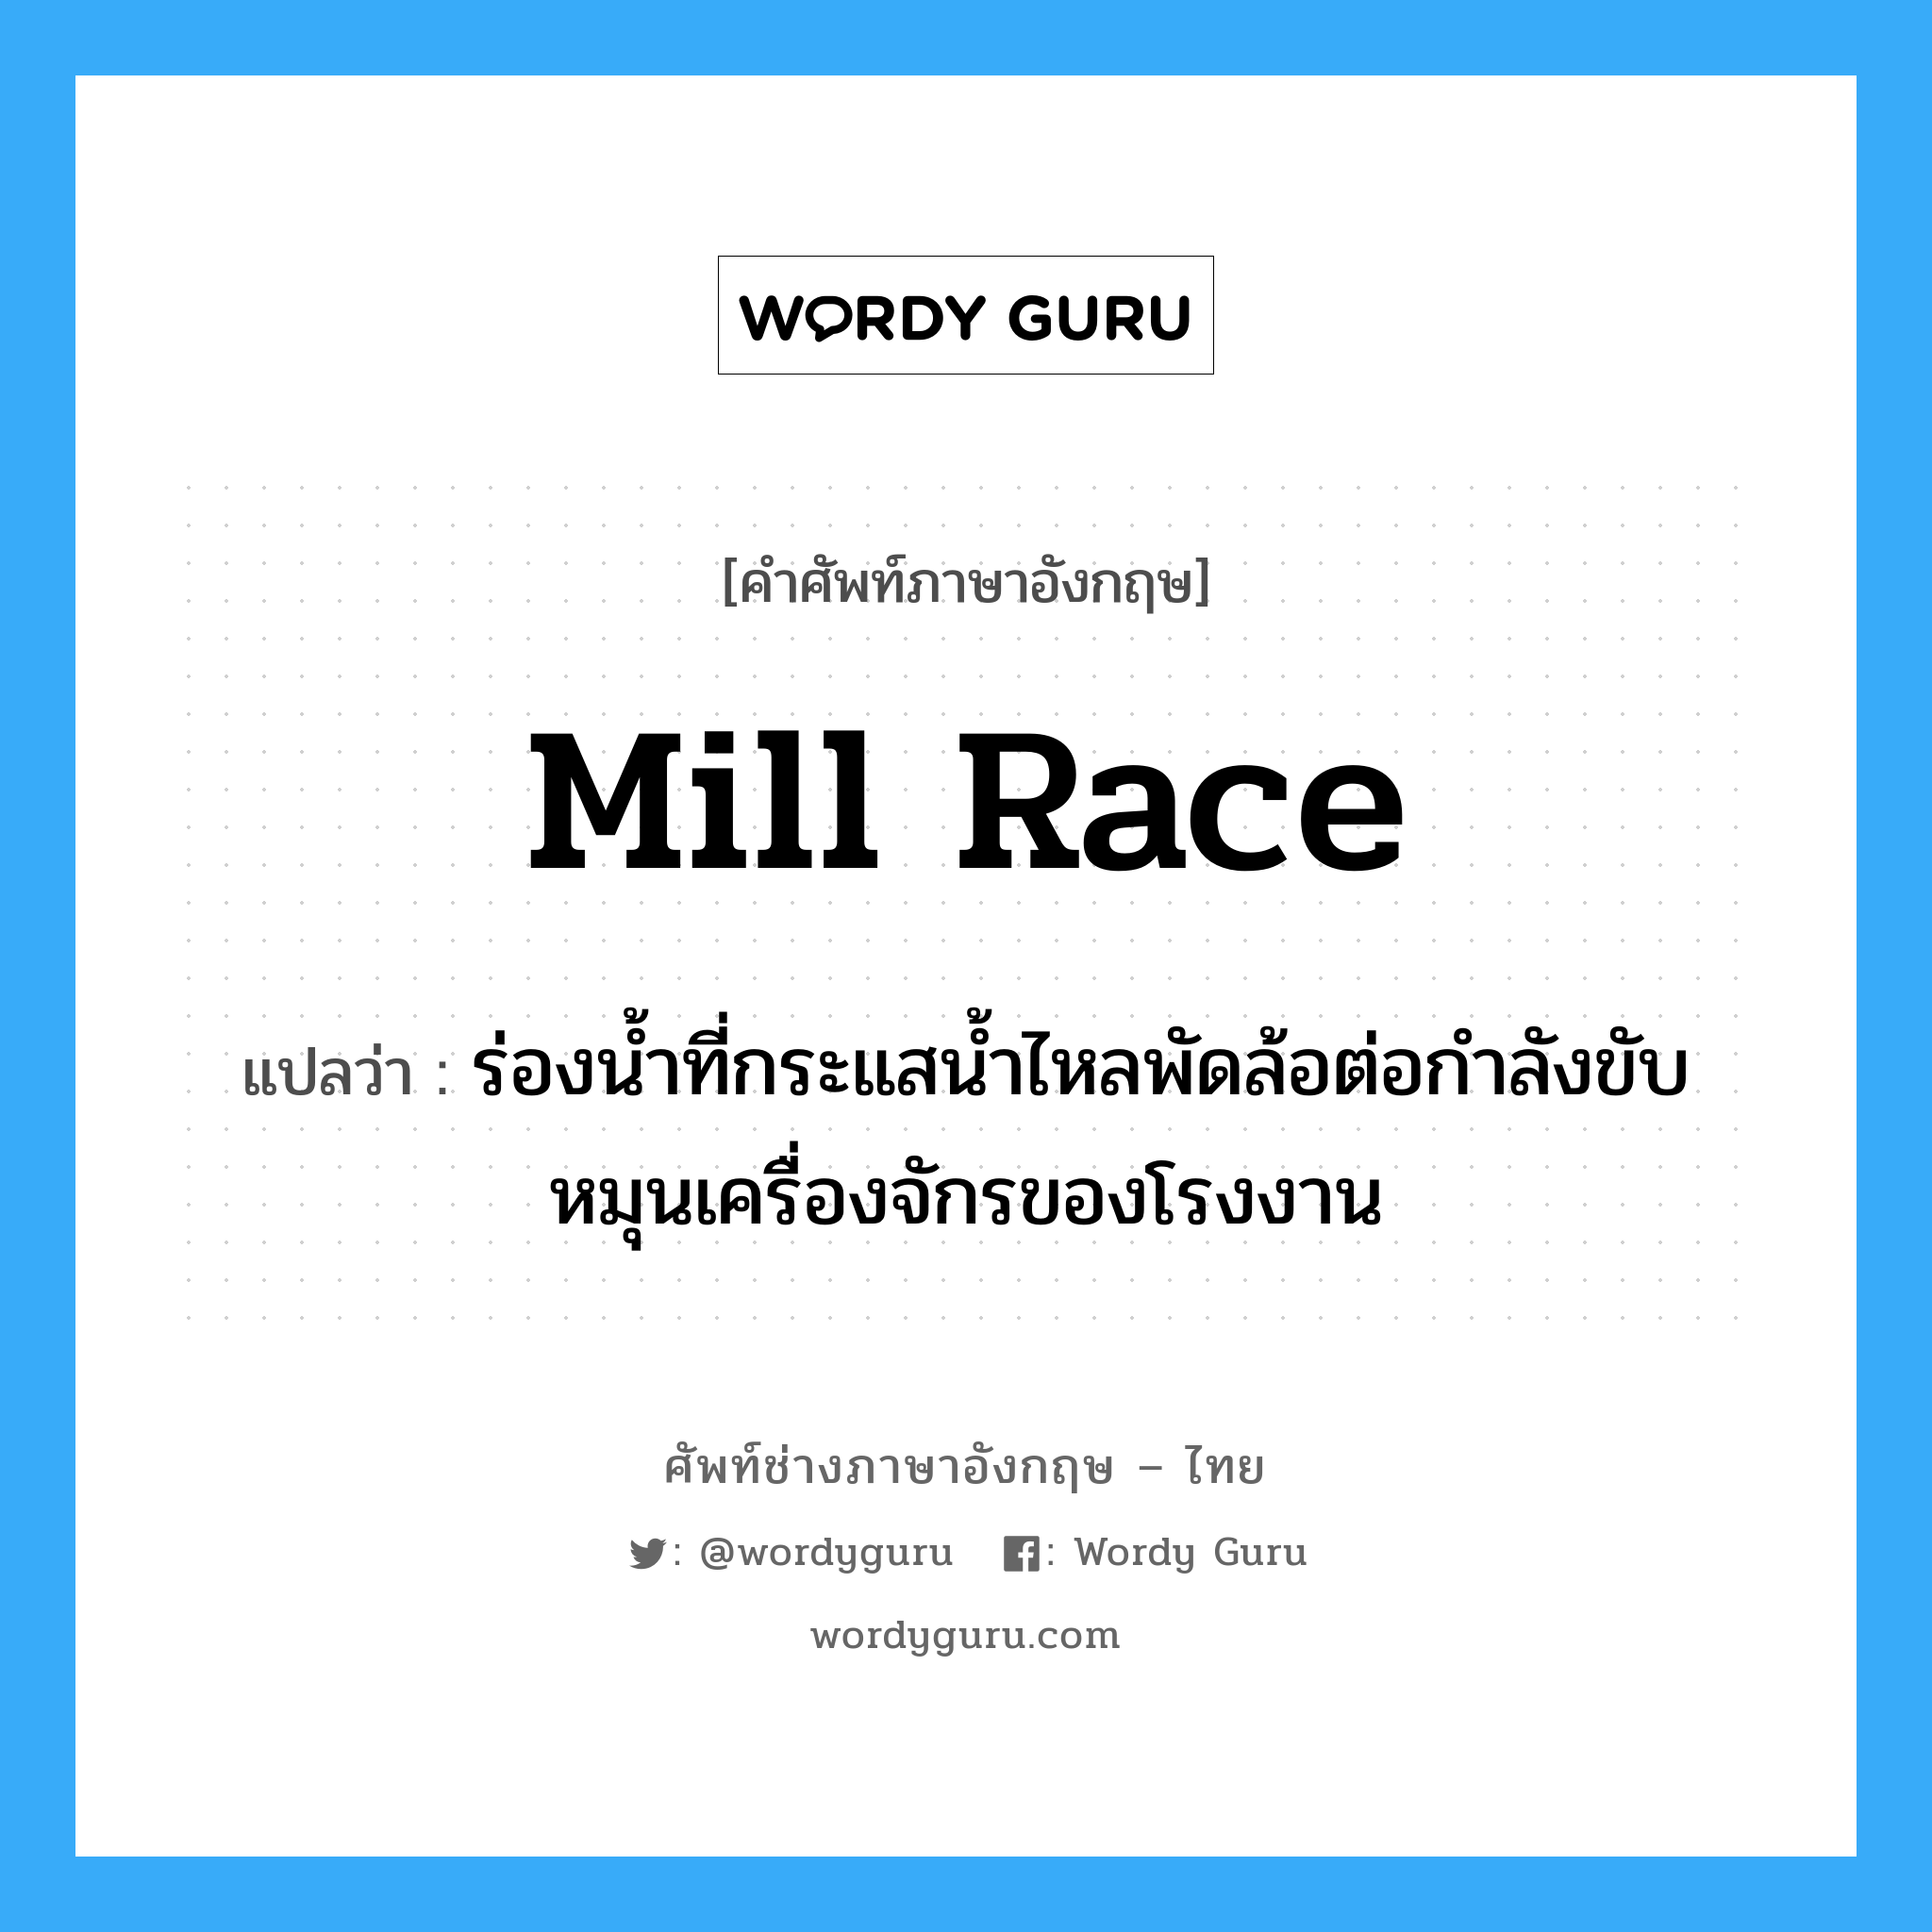 mill race แปลว่า?, คำศัพท์ช่างภาษาอังกฤษ - ไทย mill race คำศัพท์ภาษาอังกฤษ mill race แปลว่า ร่องน้ำที่กระแสน้ำไหลพัดล้อต่อกำลังขับหมุนเครื่องจักรของโรงงาน